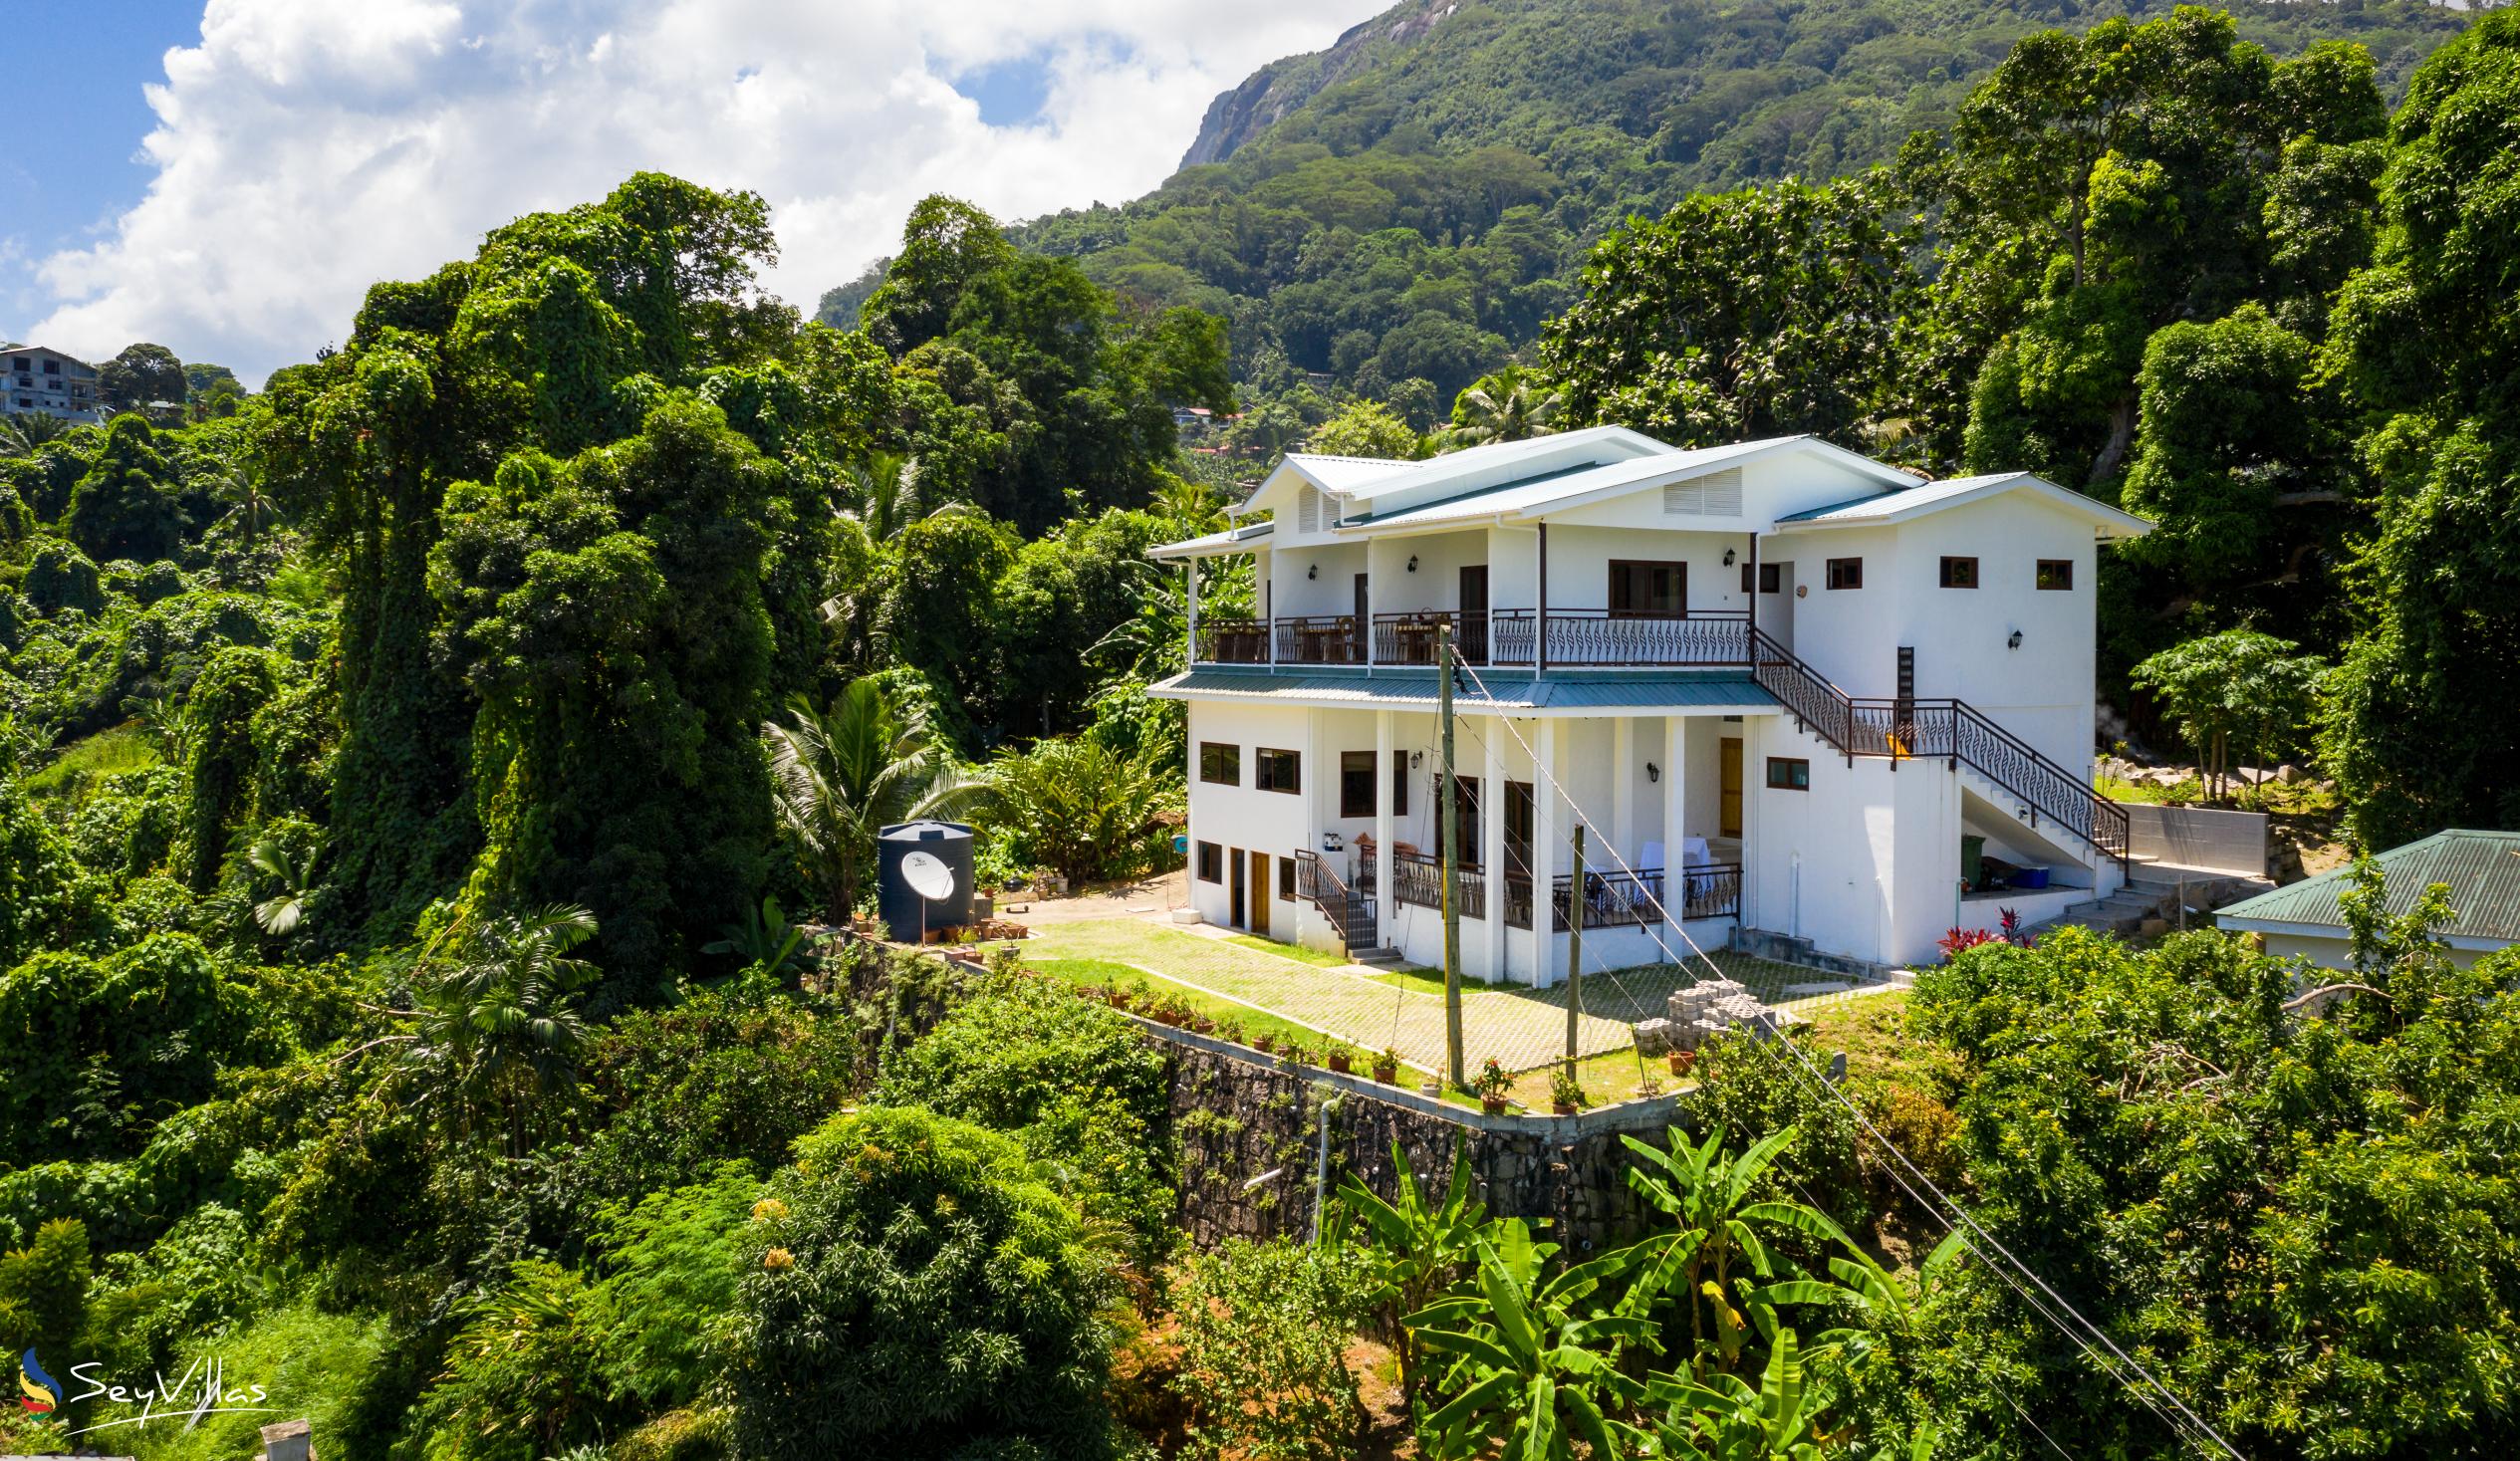 Photo 6: Tama's Holiday Apartments - Outdoor area - Mahé (Seychelles)